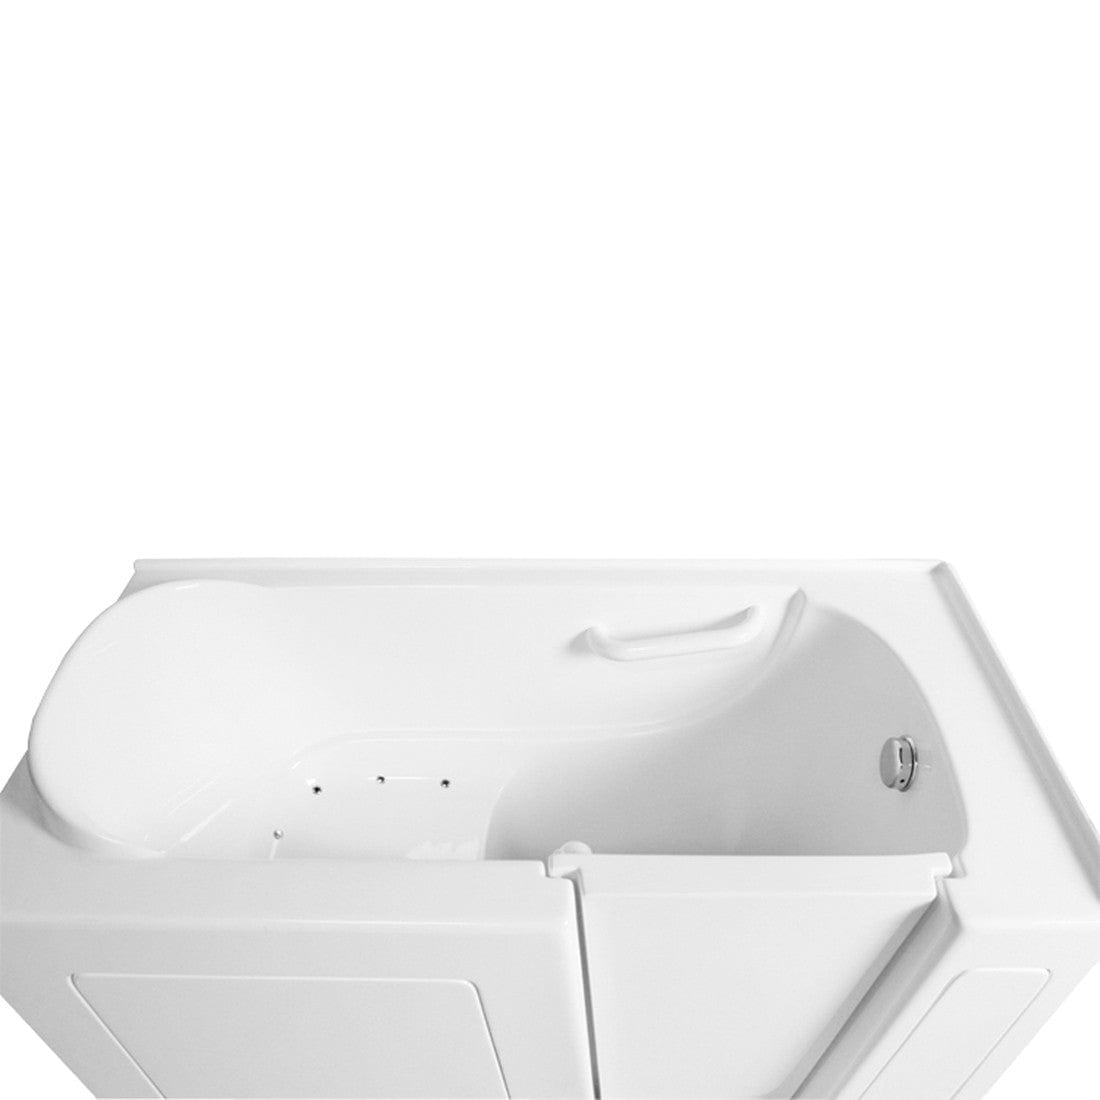 Ariel EZWT-2651 Dual Series Walk-In Tub | EZWT-2651-DUAL-R